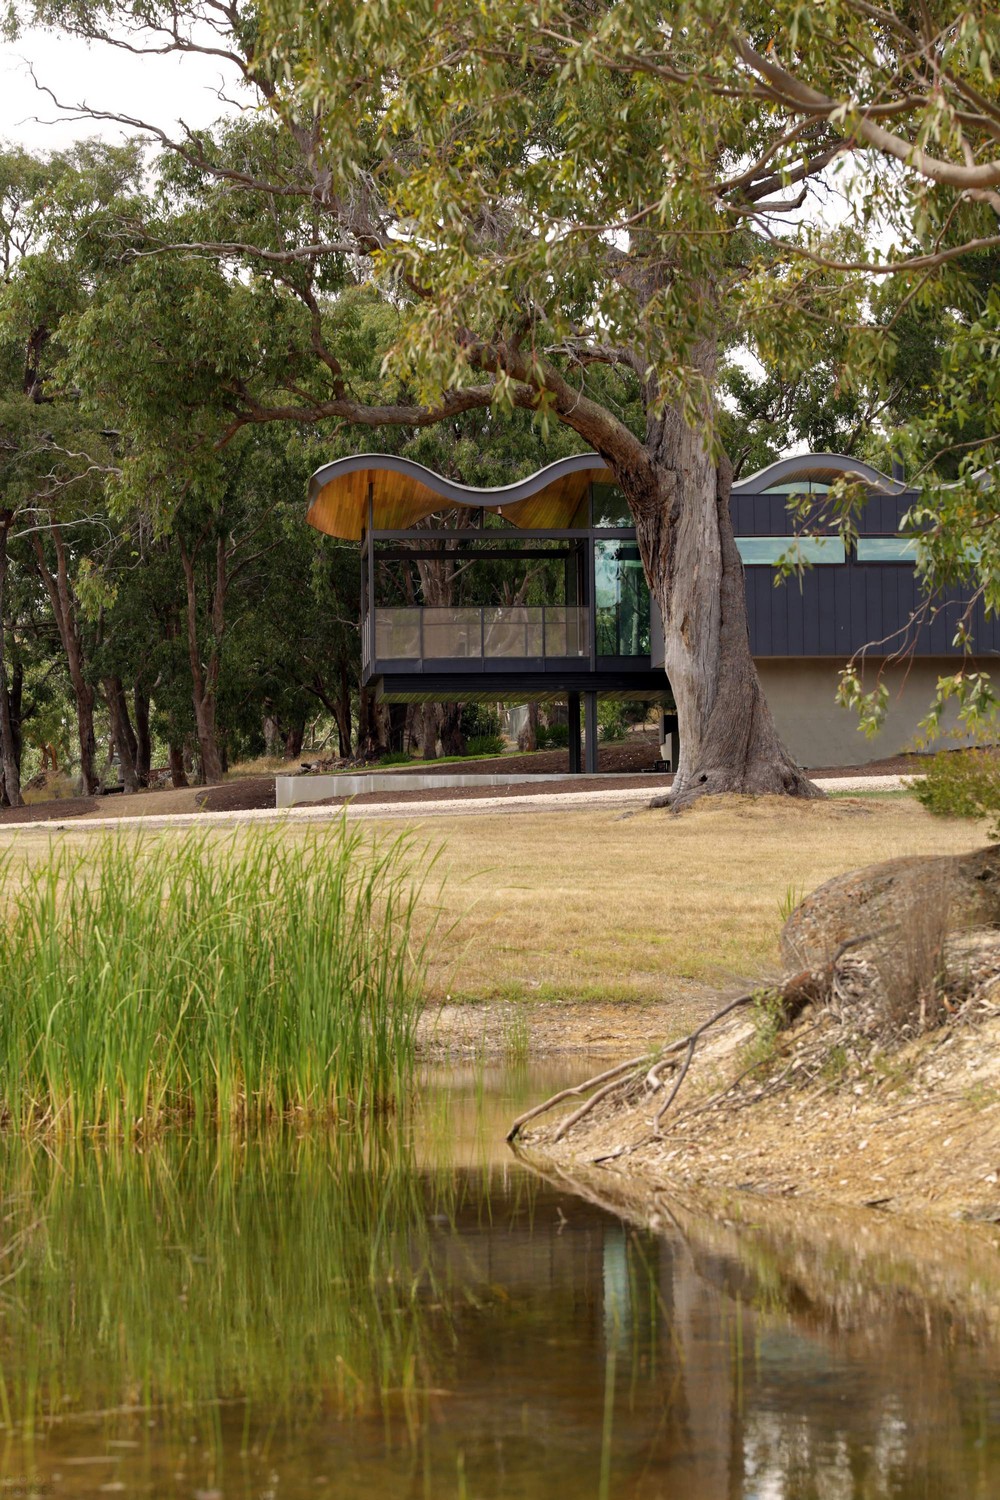 Частный дом с волнистой крышей в Австралии